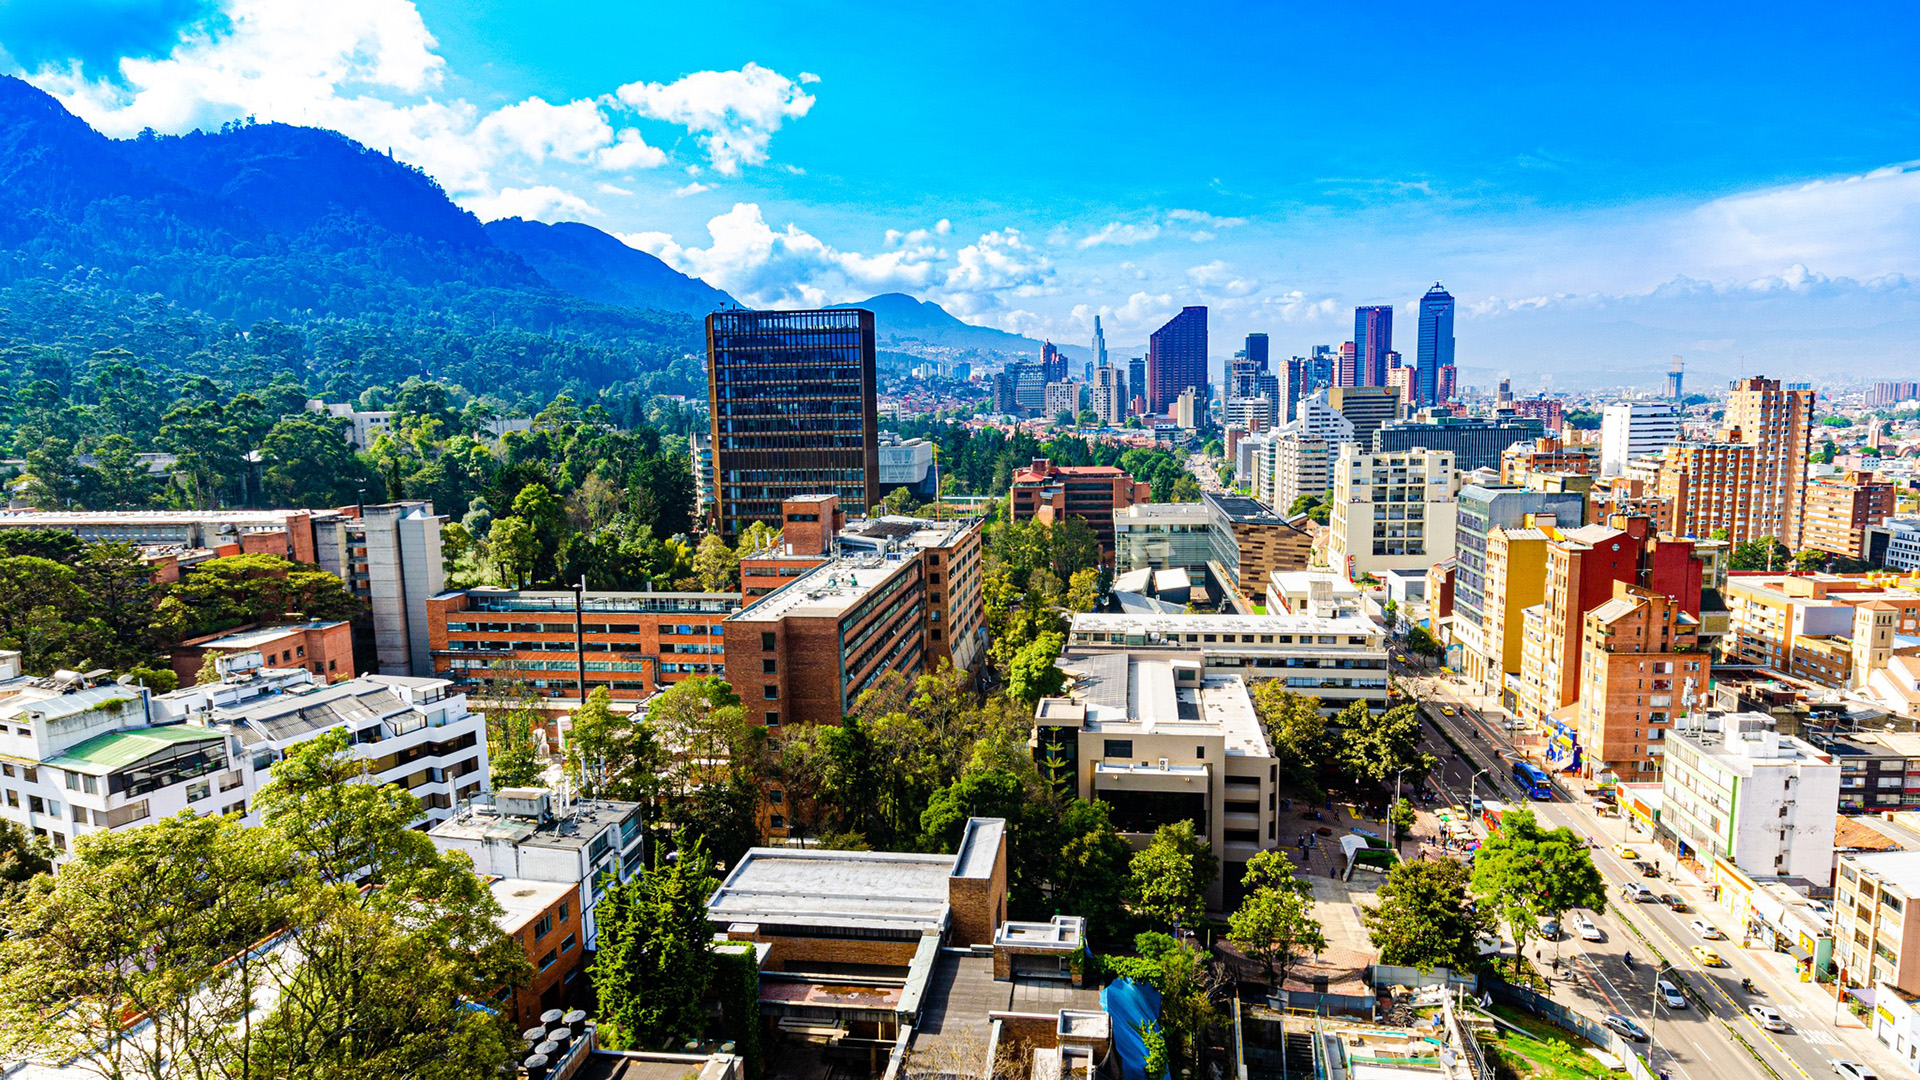 Foto dell'università di Bogotà dall'alto